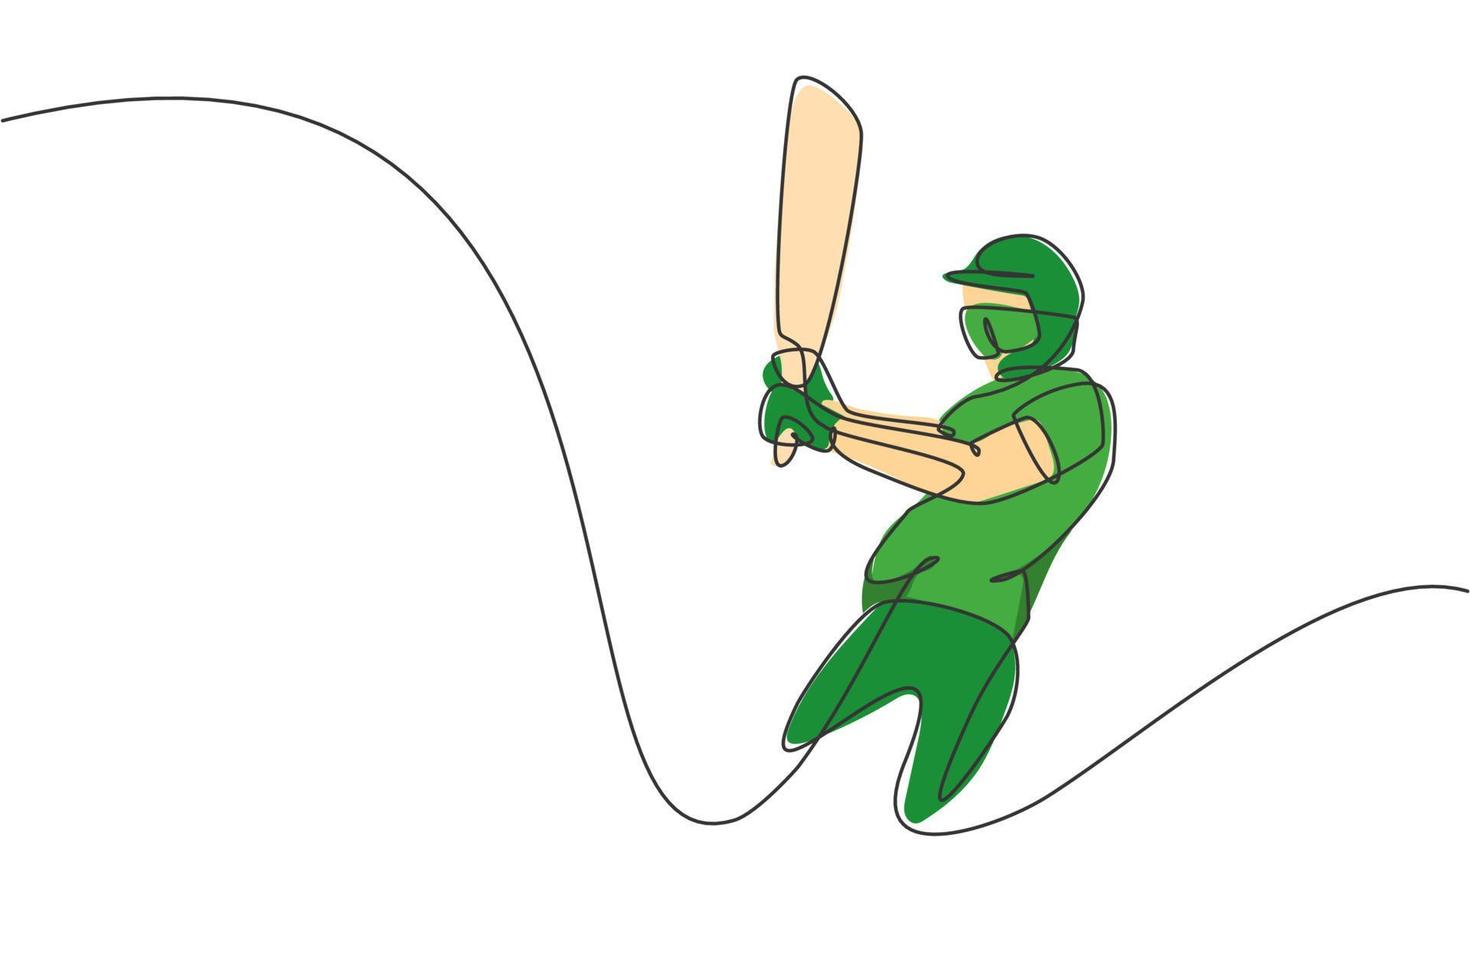 enkele doorlopende lijntekening van behendige jongeman cricketspeler swing cricket bat op oefenterrein vectorillustratie. sport oefening concept. trendy ontwerp met één regel voor media voor sportpromotie vector